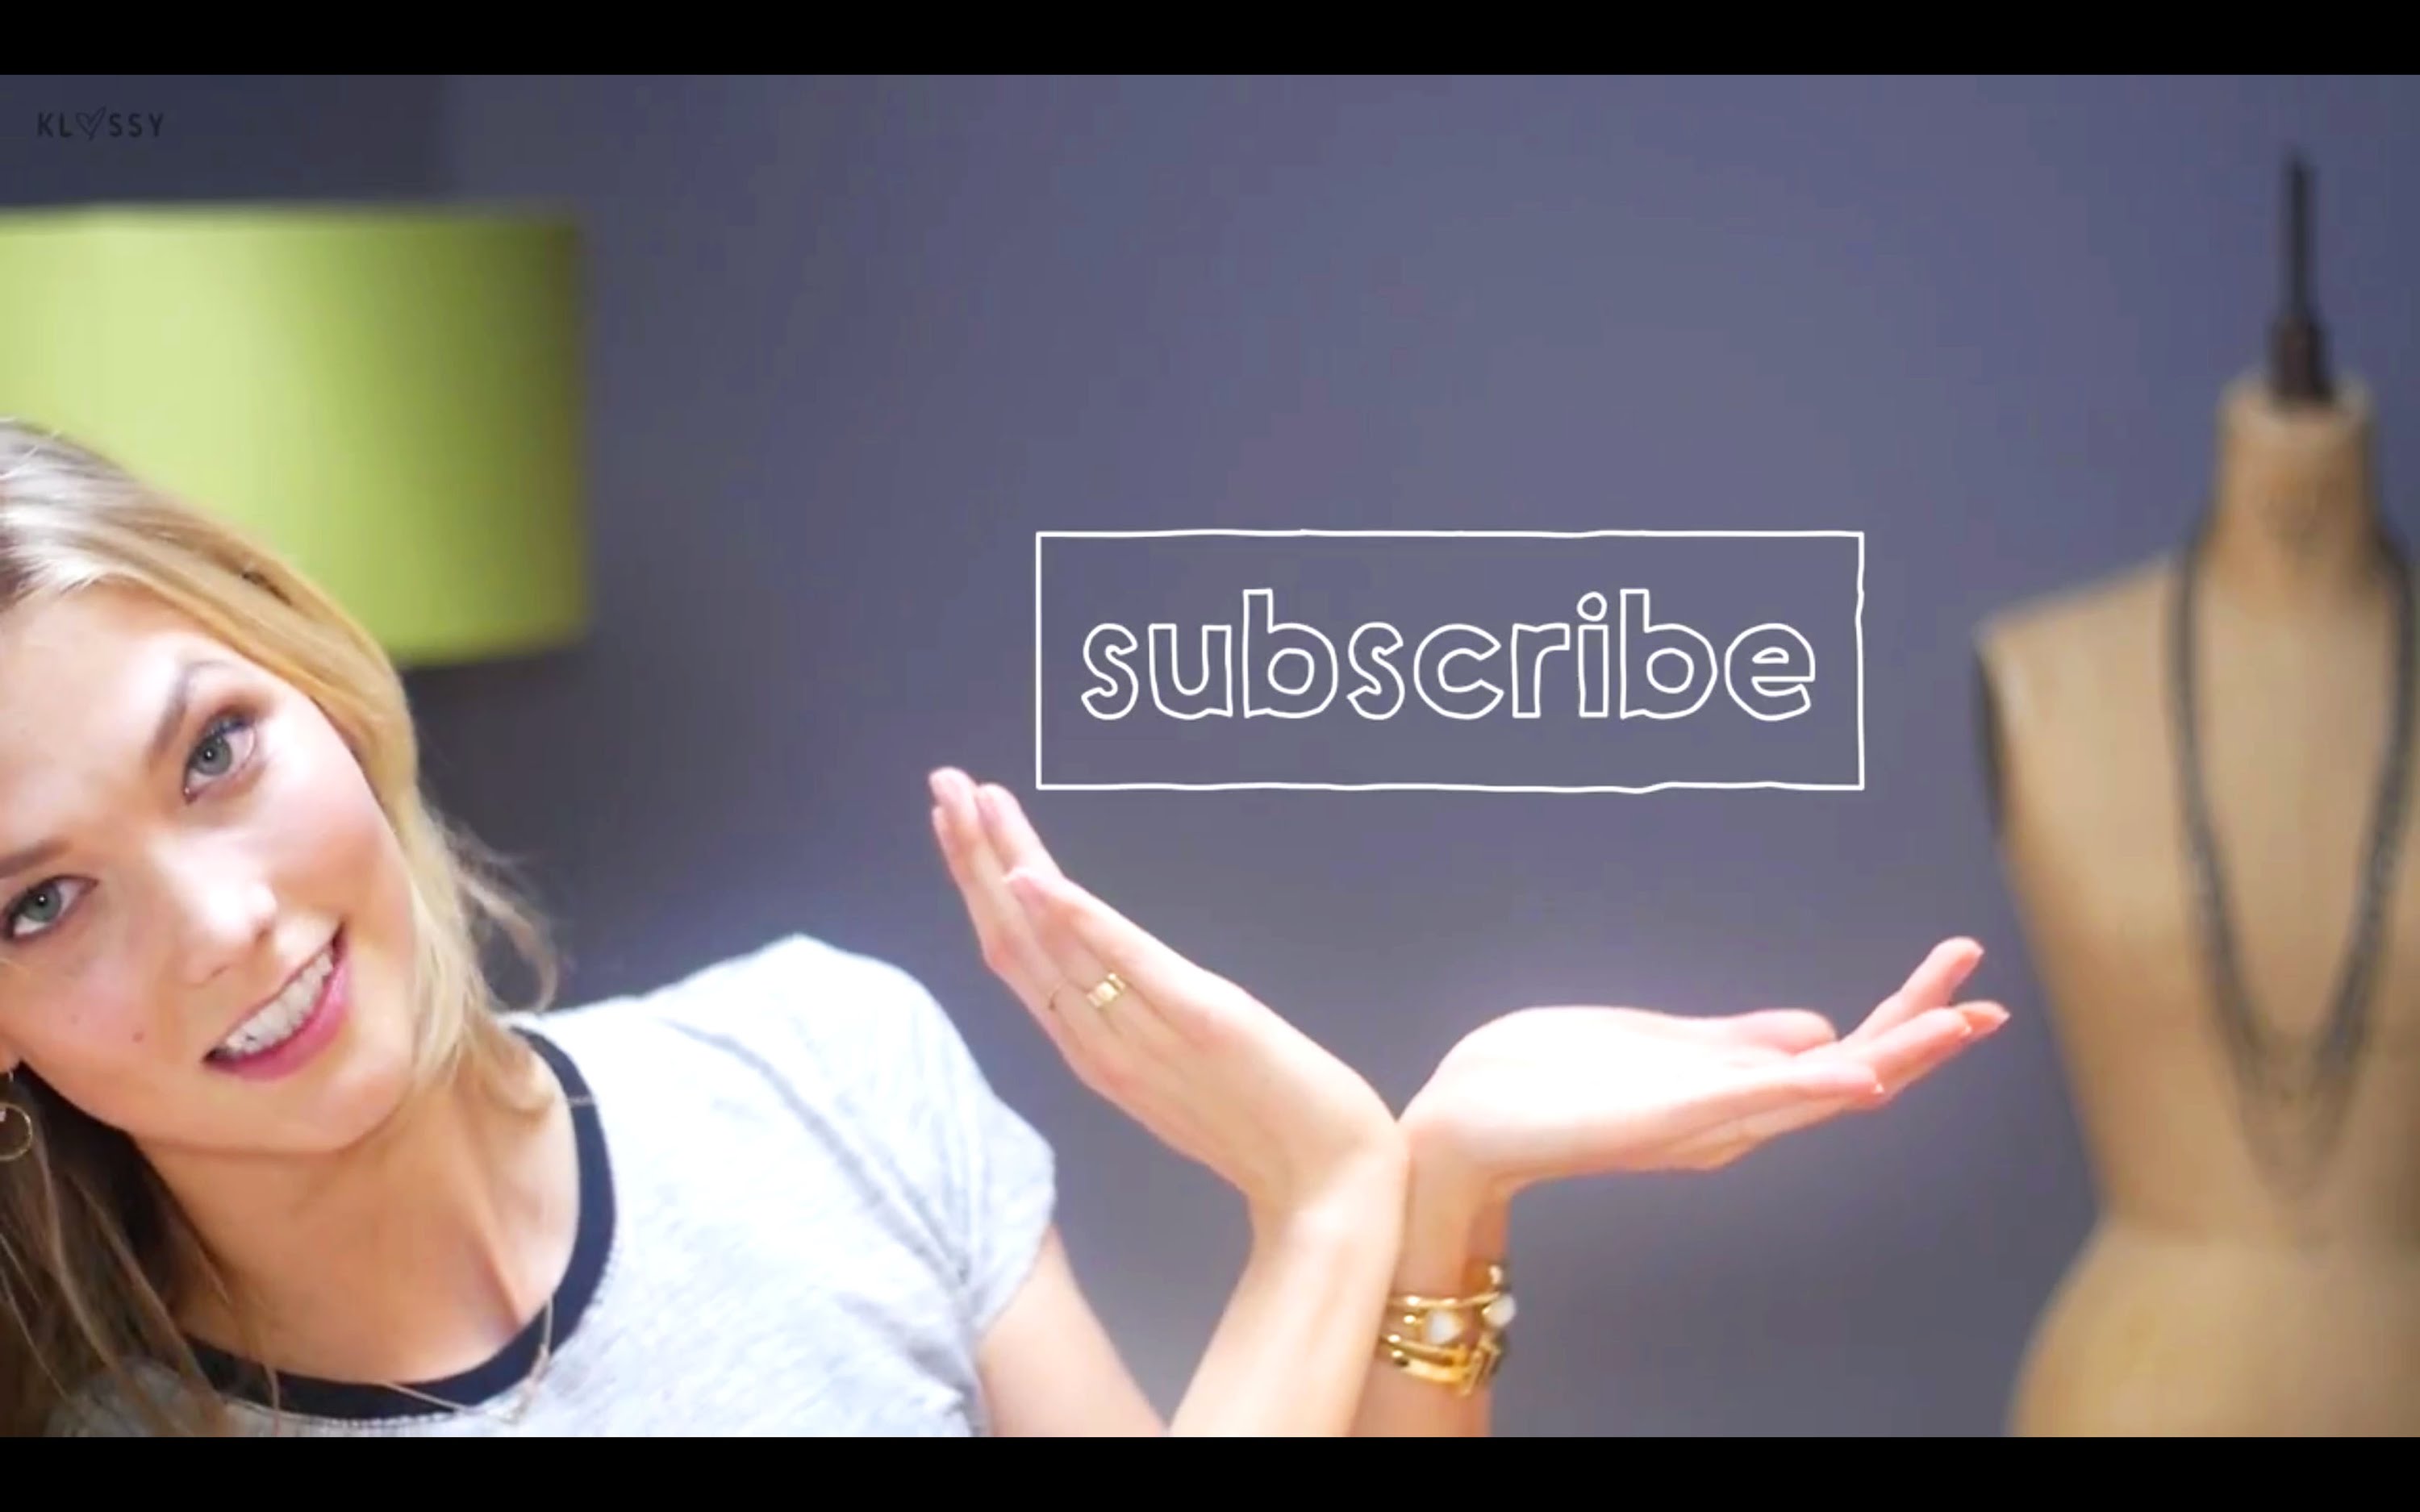 Klossy, el nuevo canal de YouTube de Karlie Kloss donde compartirá aspectos desconocidos de su vida